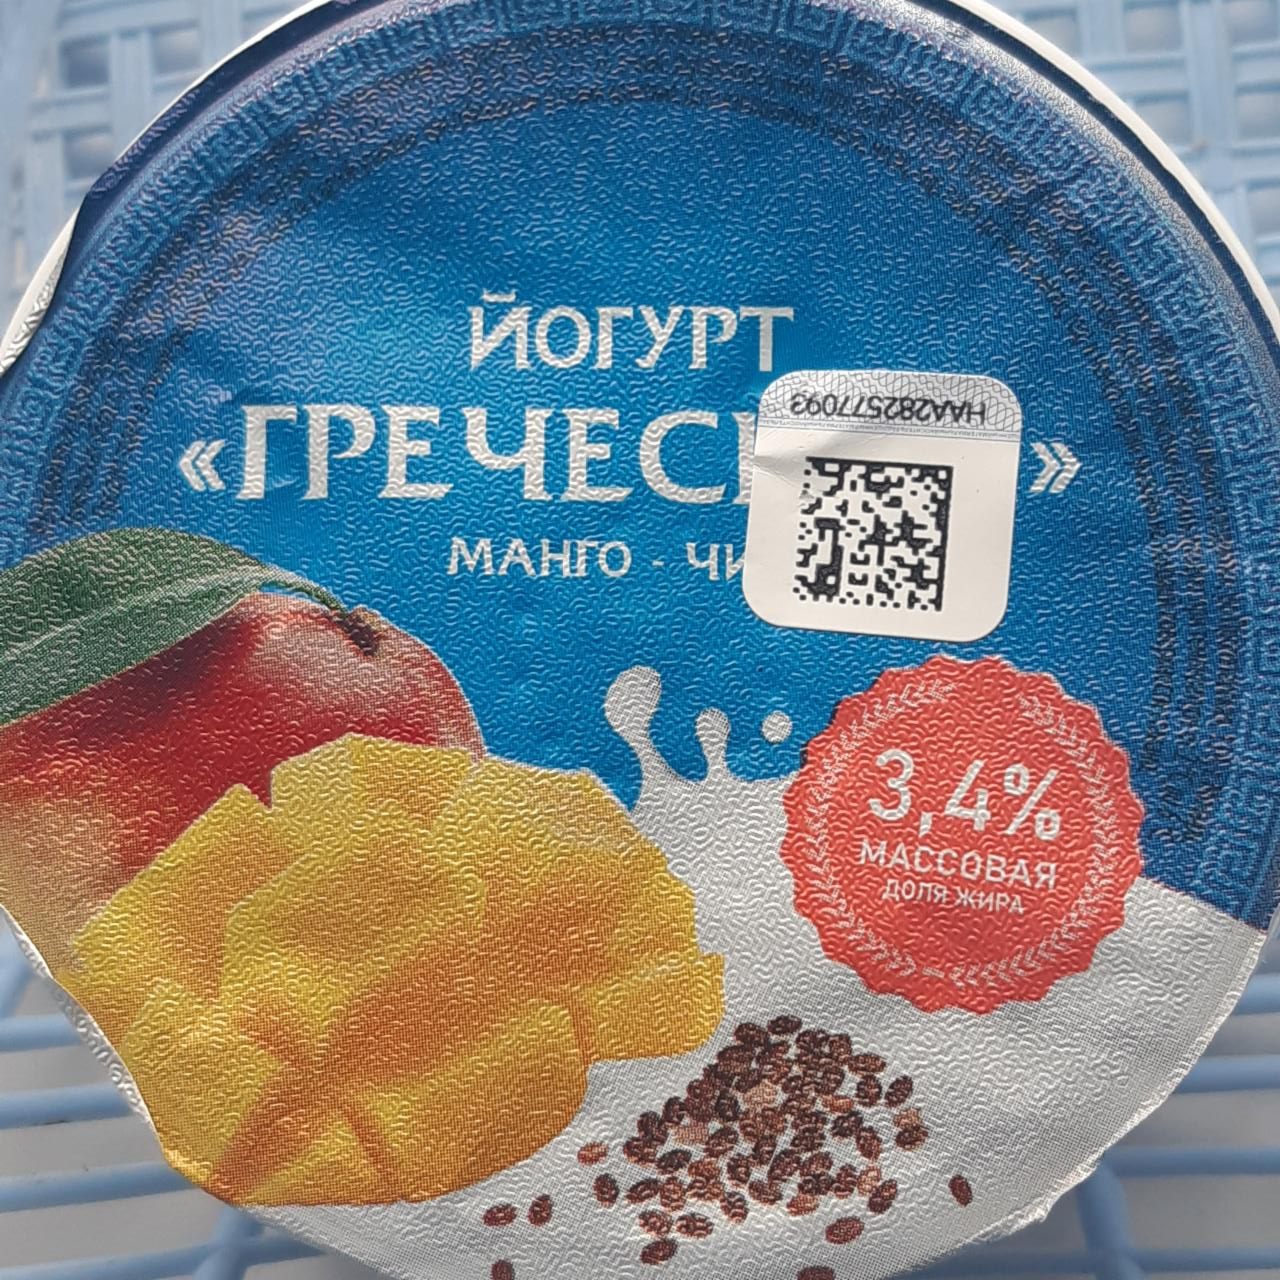 Фото - Йогурт греческий манго-чиа Мозырские молочные продукты